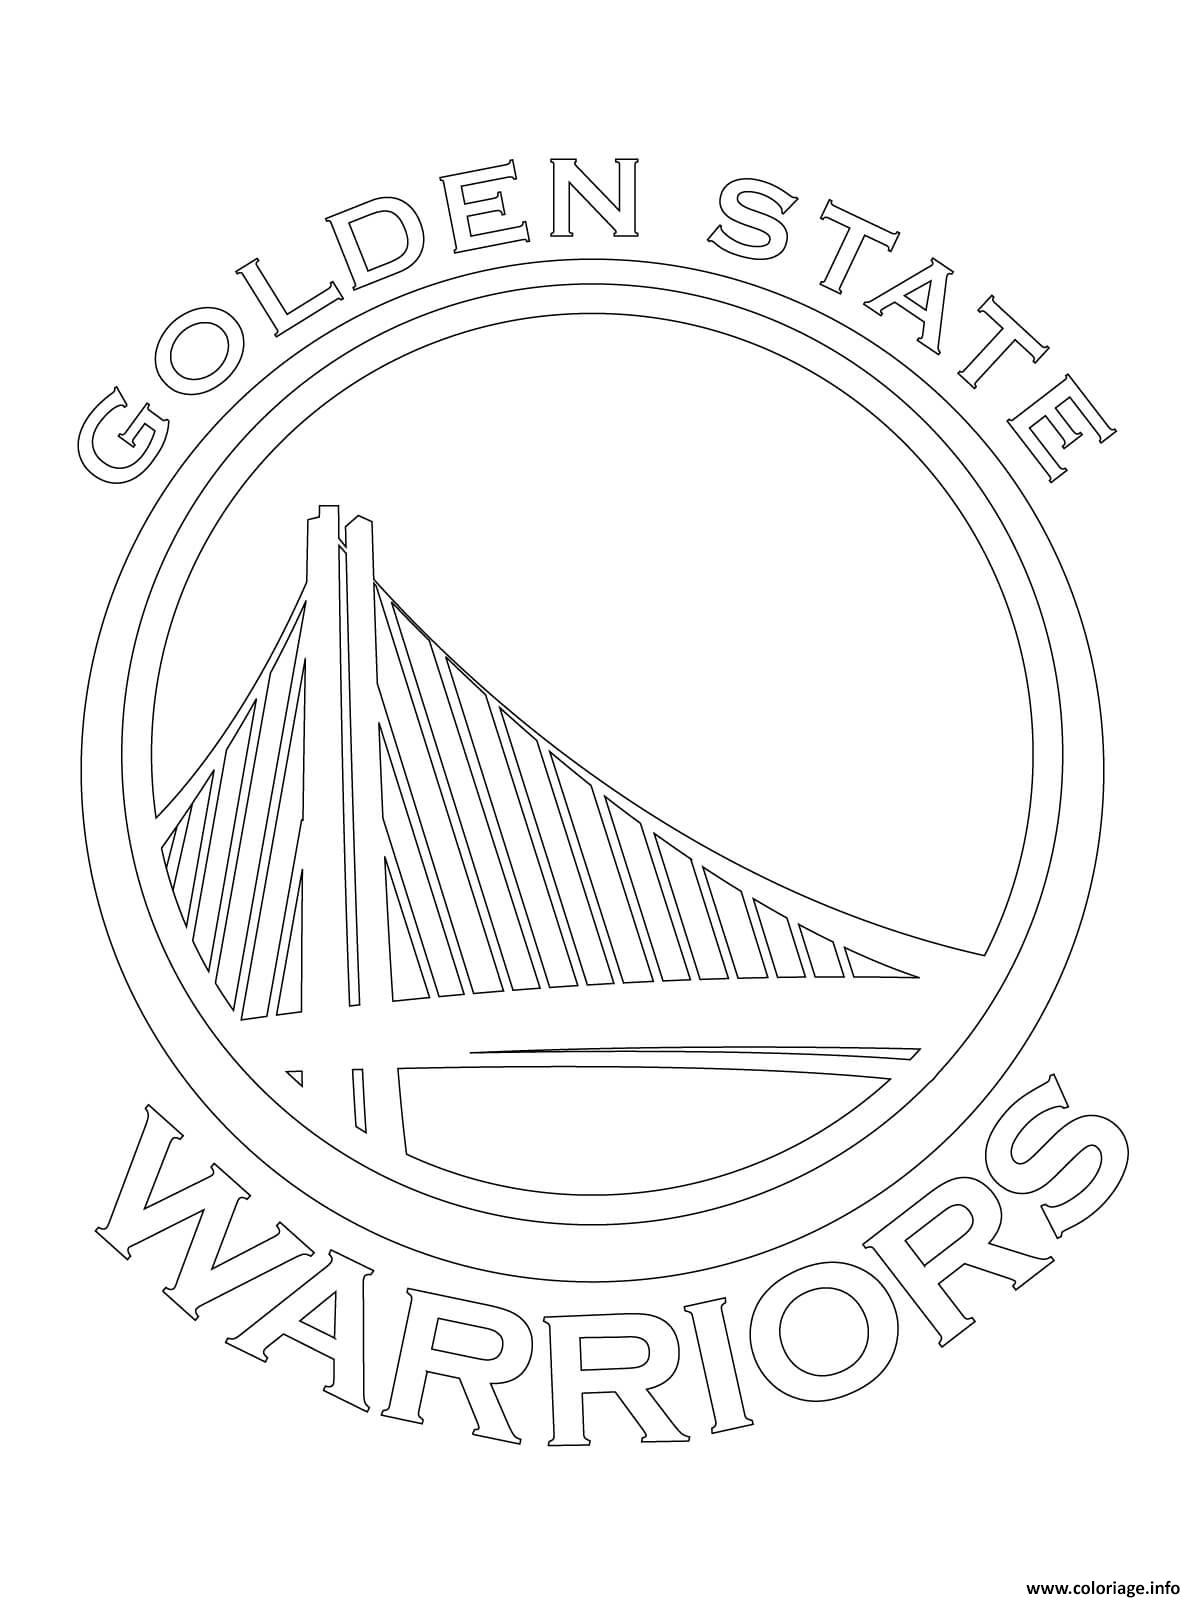 Dessin golden state warriors logo nba sport Coloriage Gratuit à Imprimer